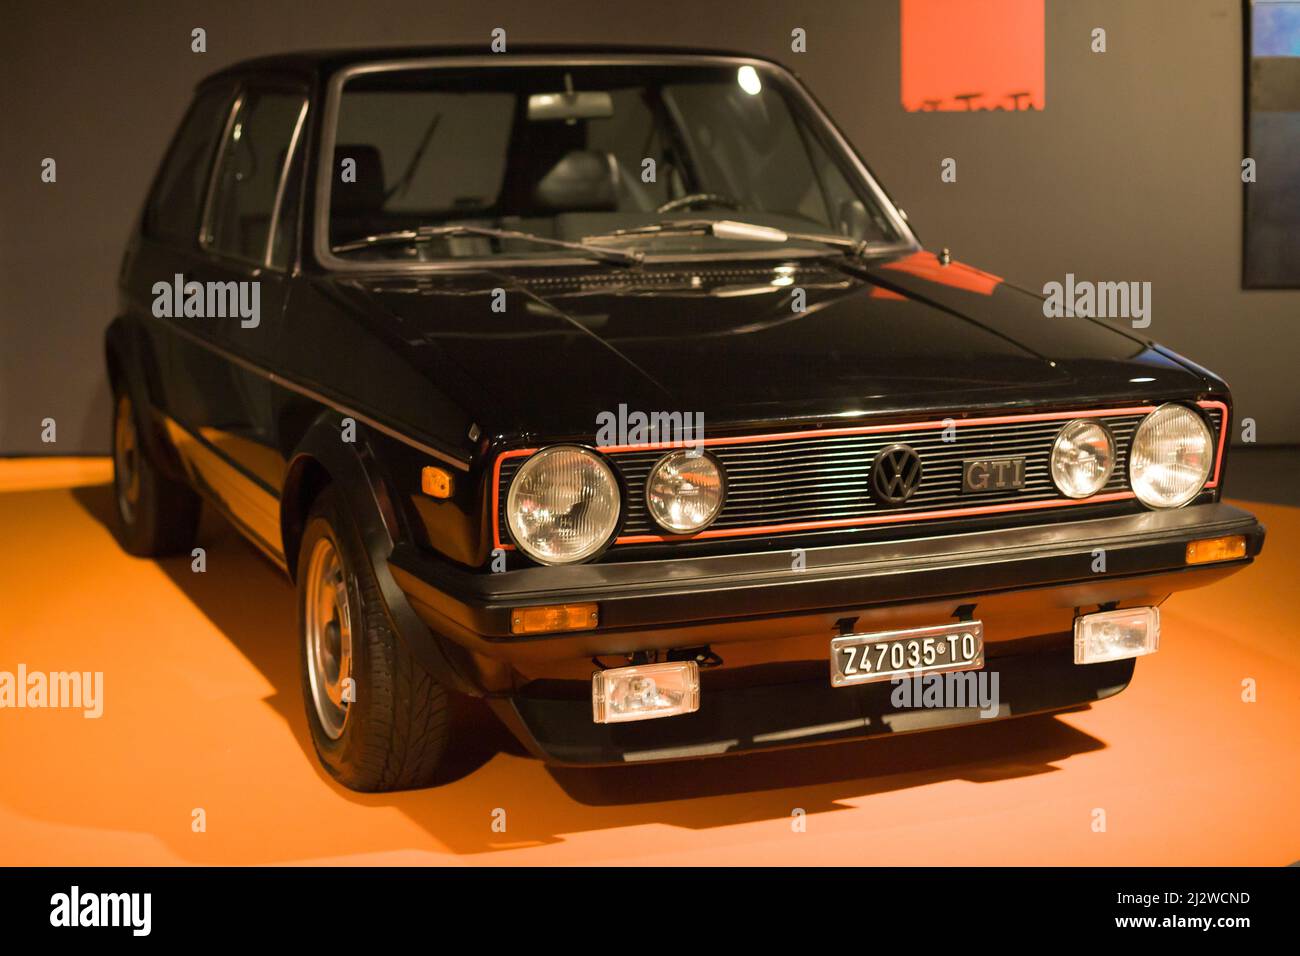 Turin, Italie - 14 août 2021 : Volkswagen Golf GTI Mk1 présenté au Musée national de l'automobile (MAUTO) à Turin, Italie. Banque D'Images